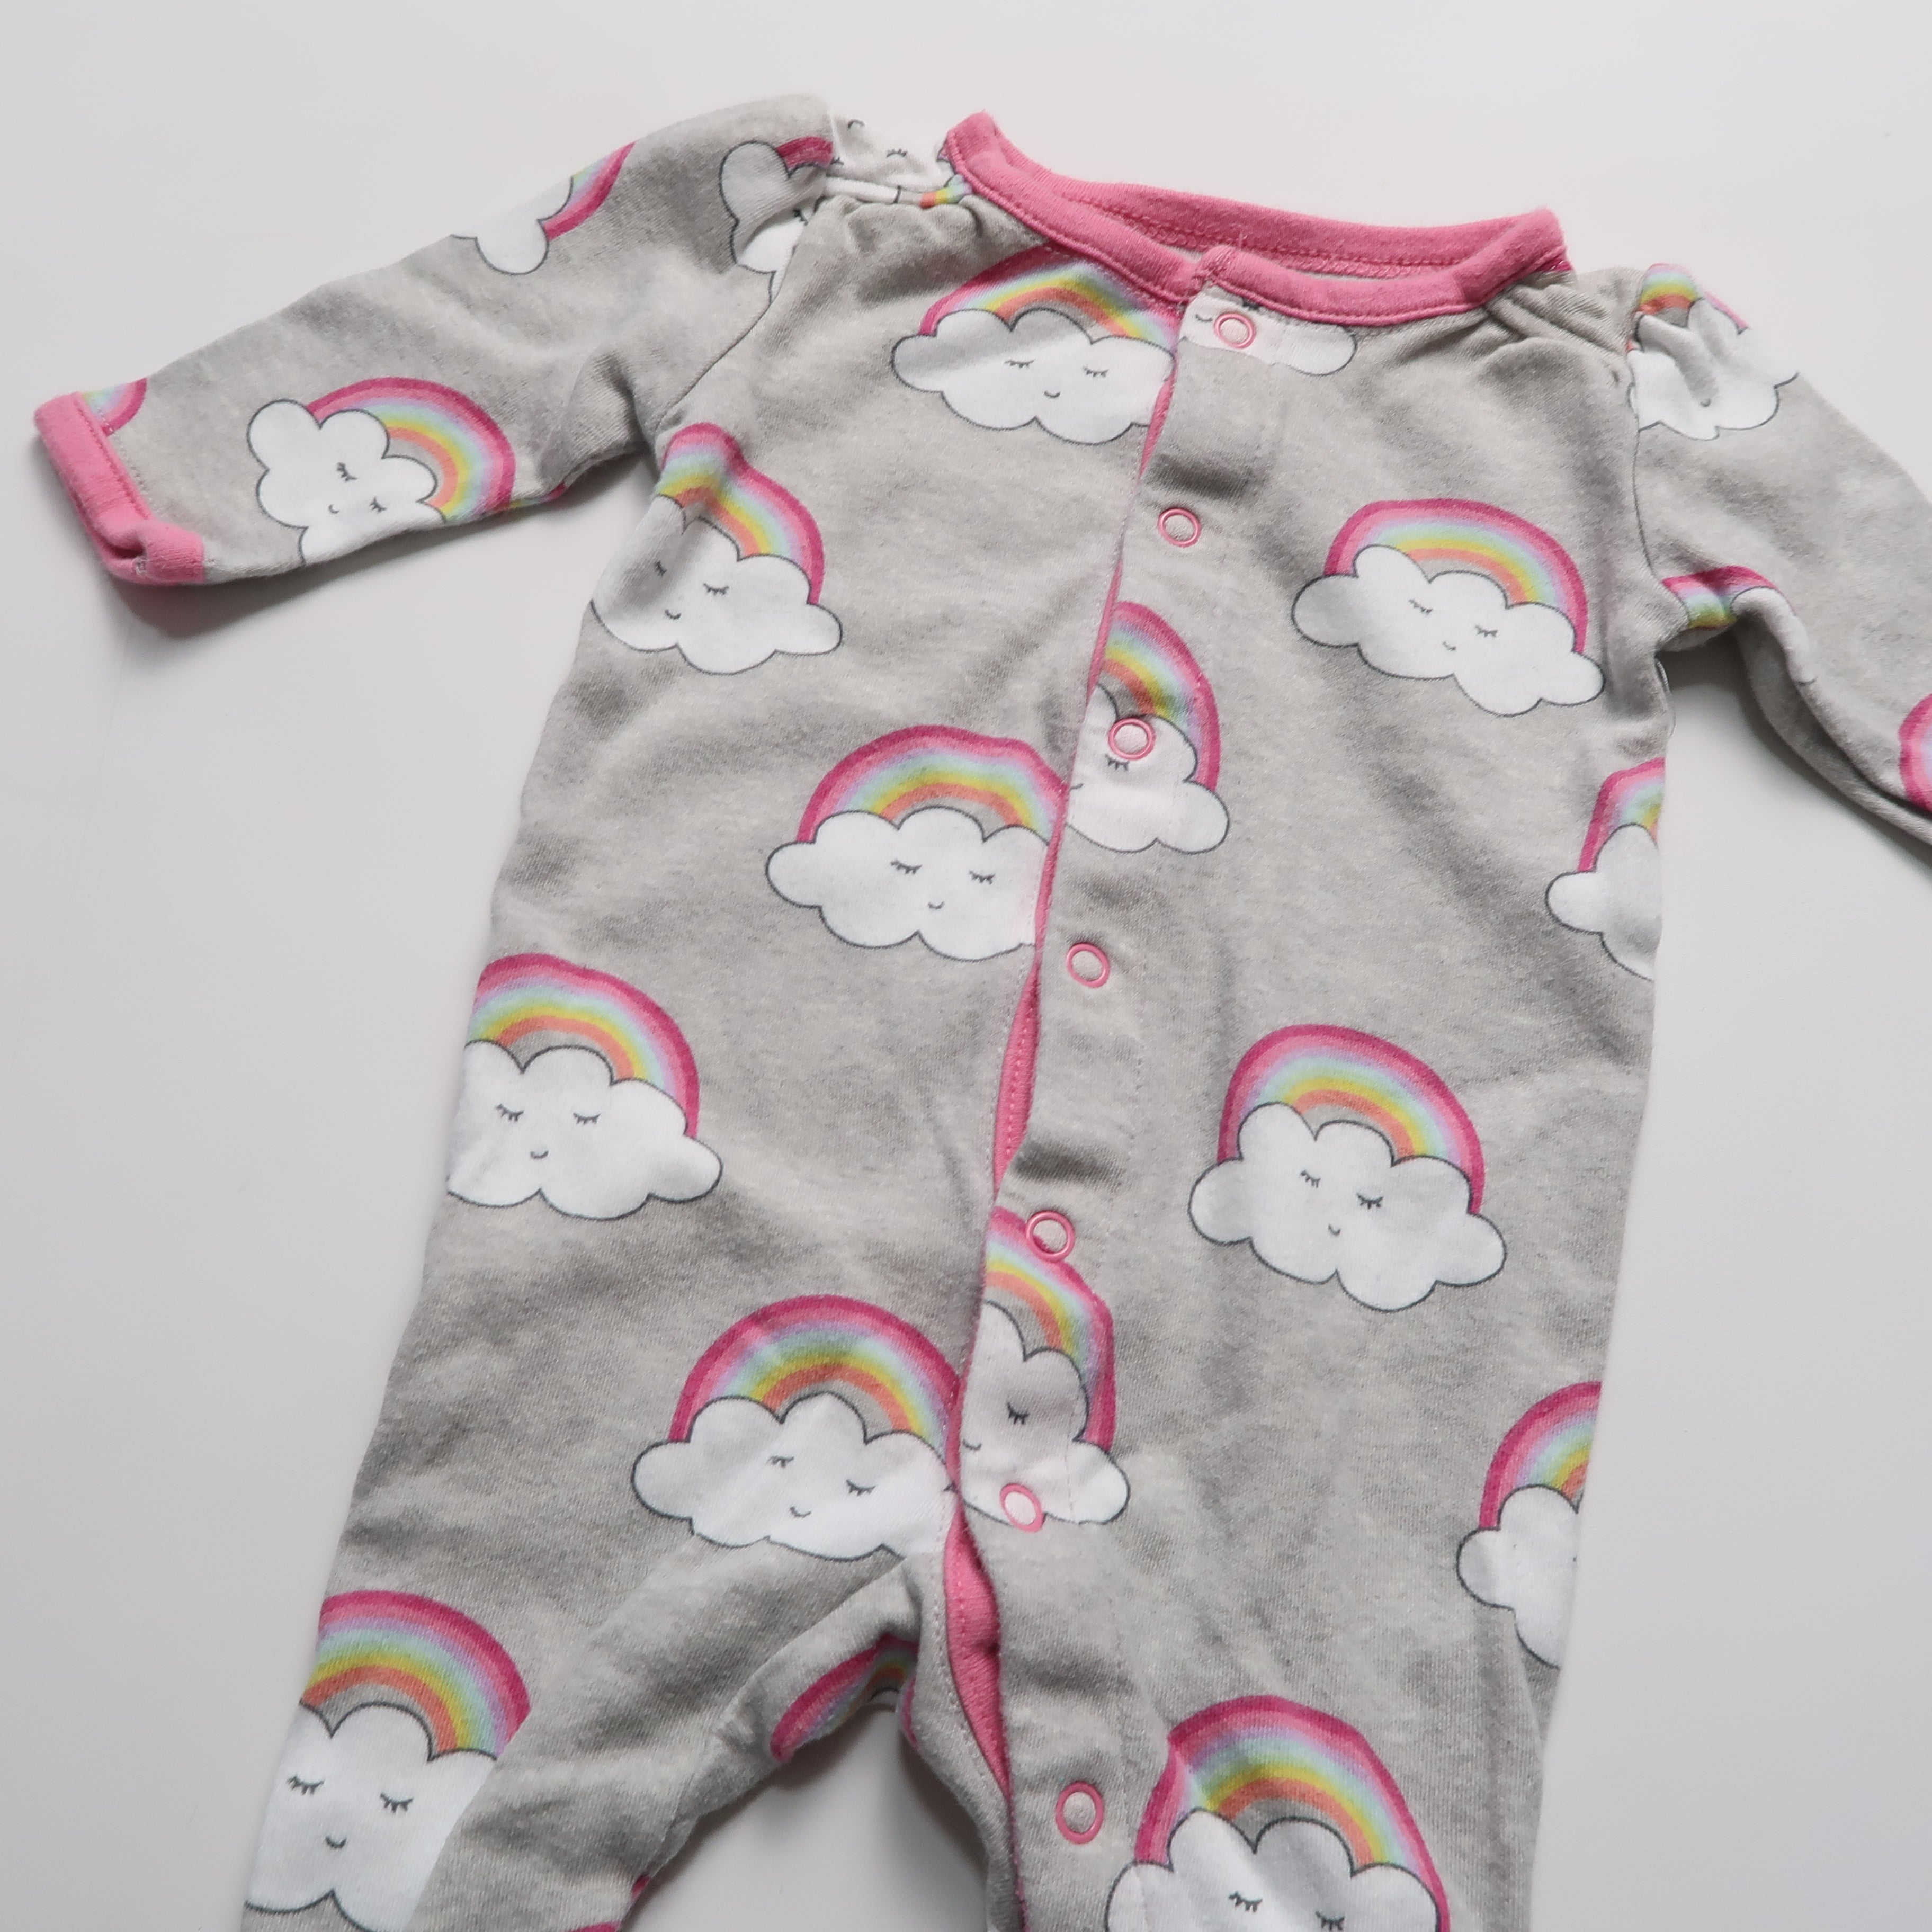 Bundles Baby - Sleepwear (Newborn)